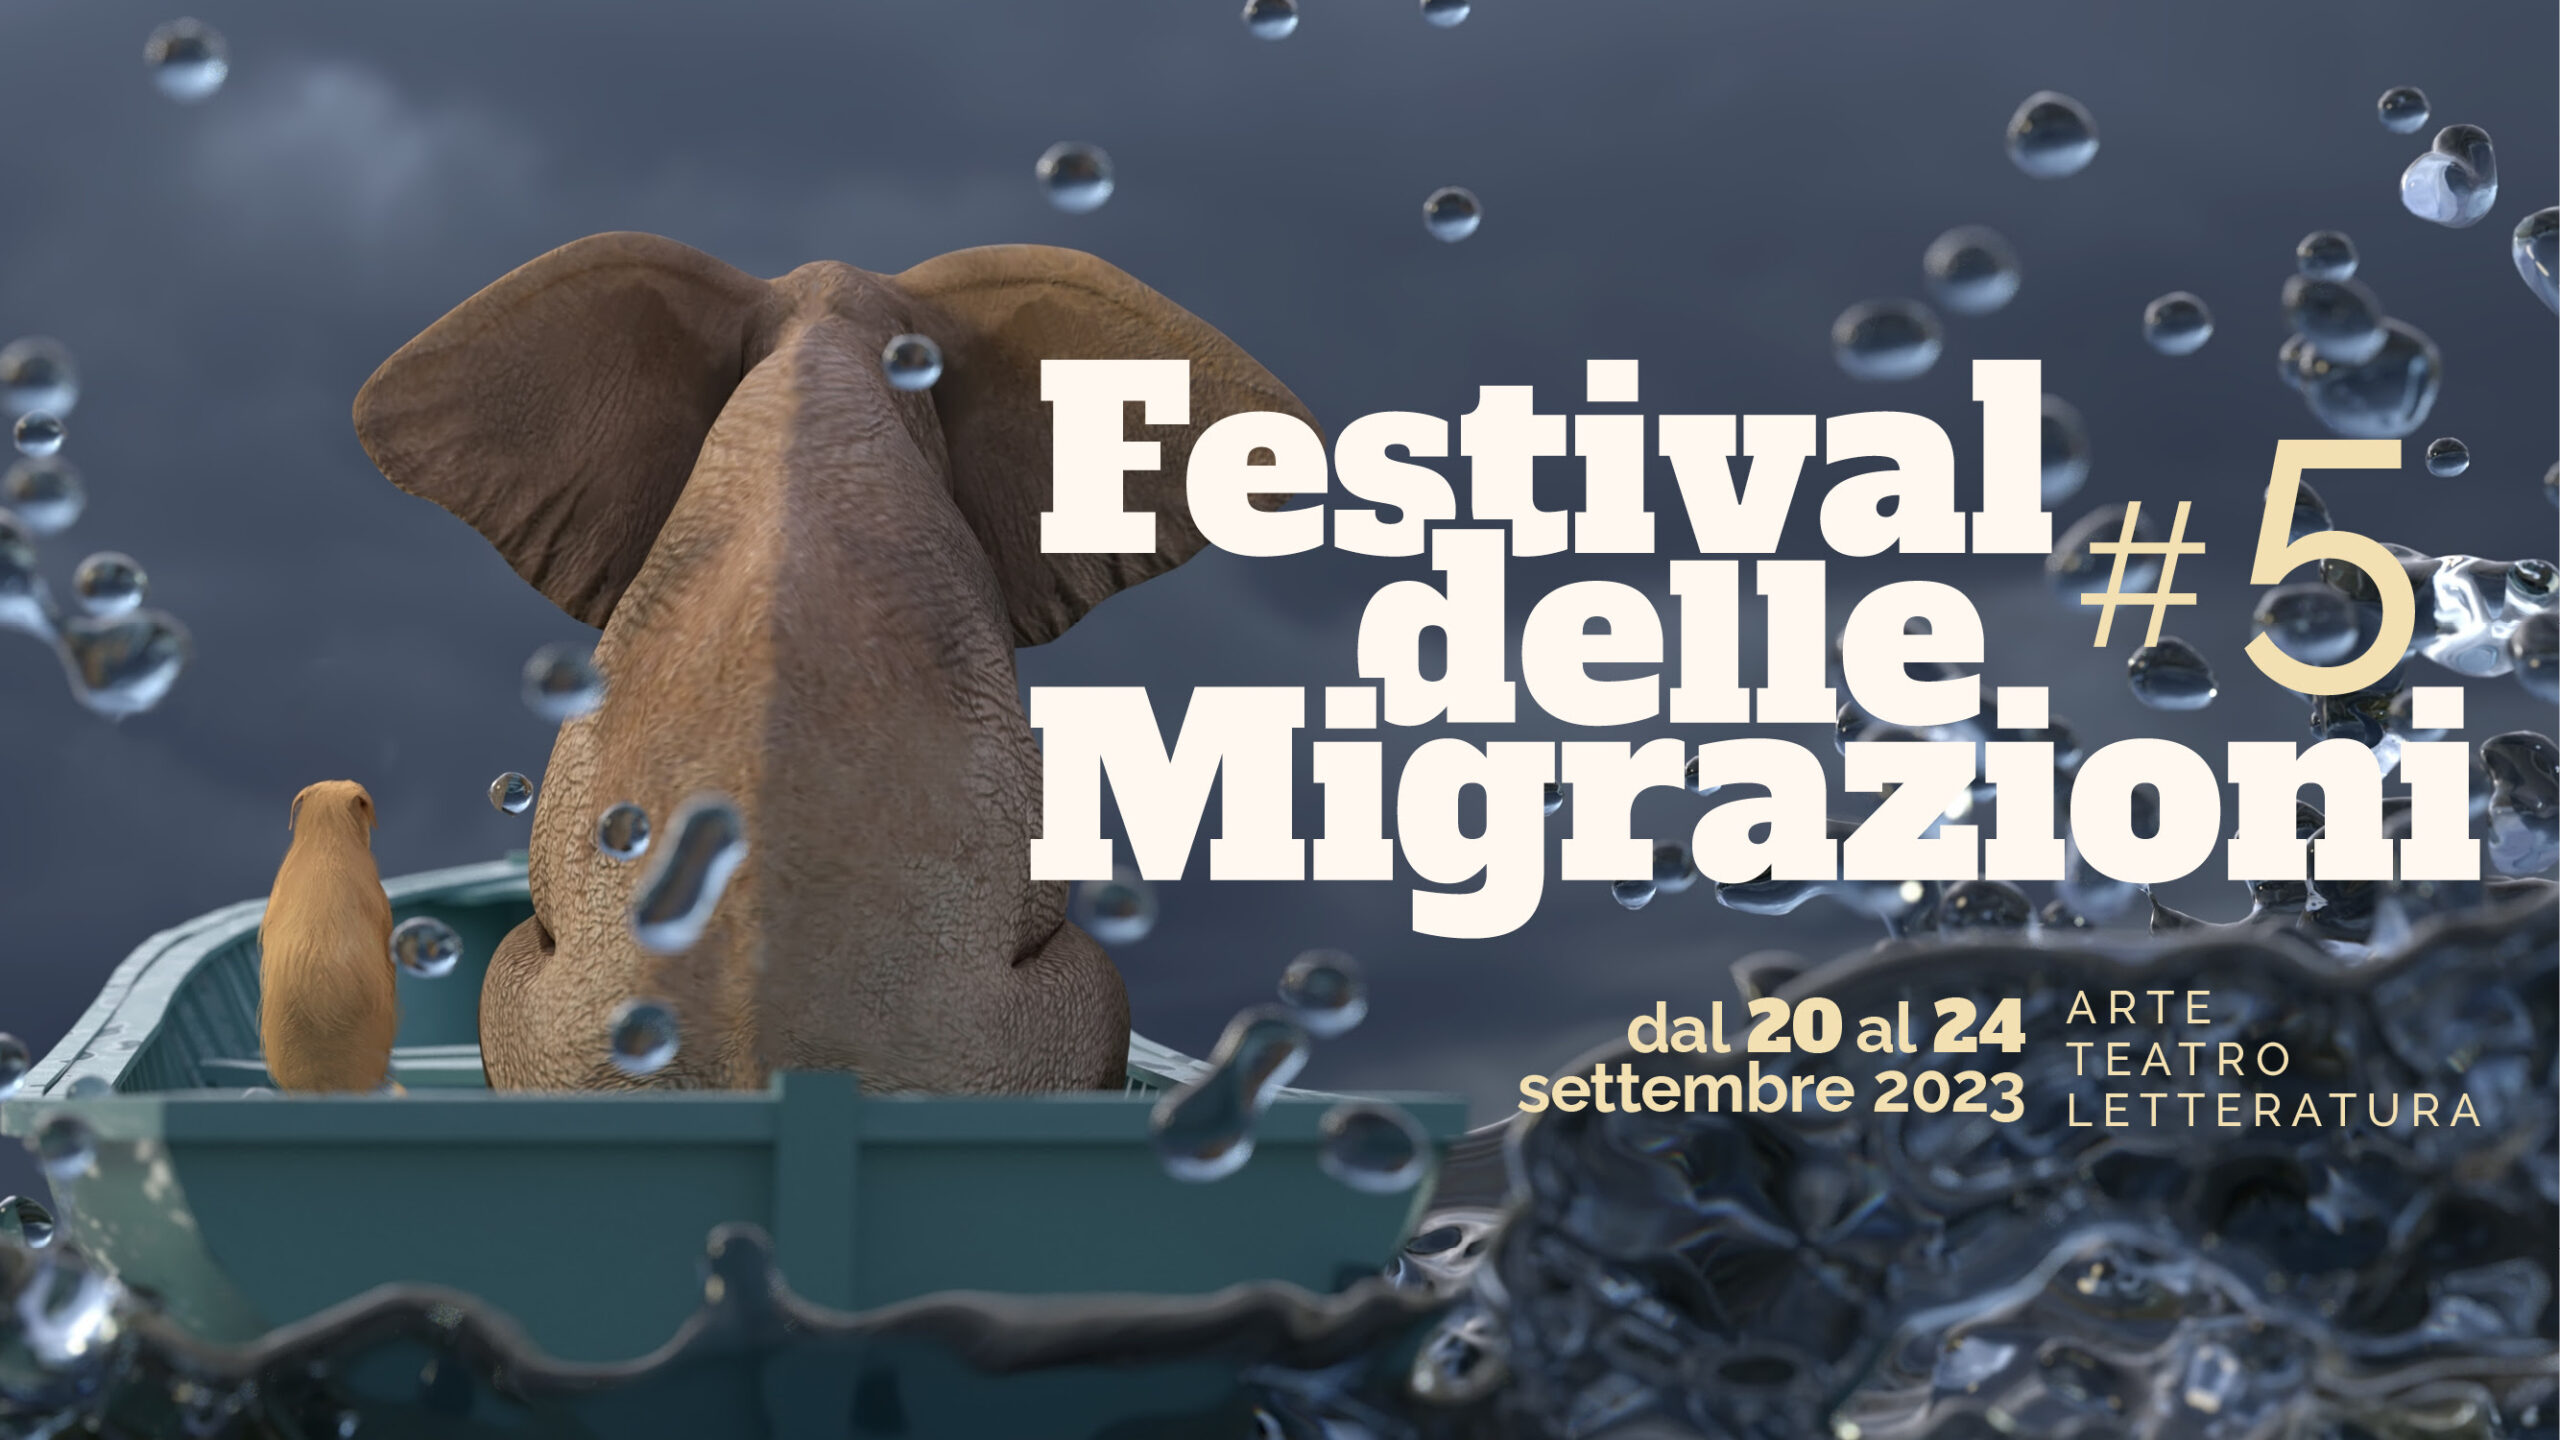 Festival delle Migrazioni 2023, a Torino dal 20 al 24 settembre